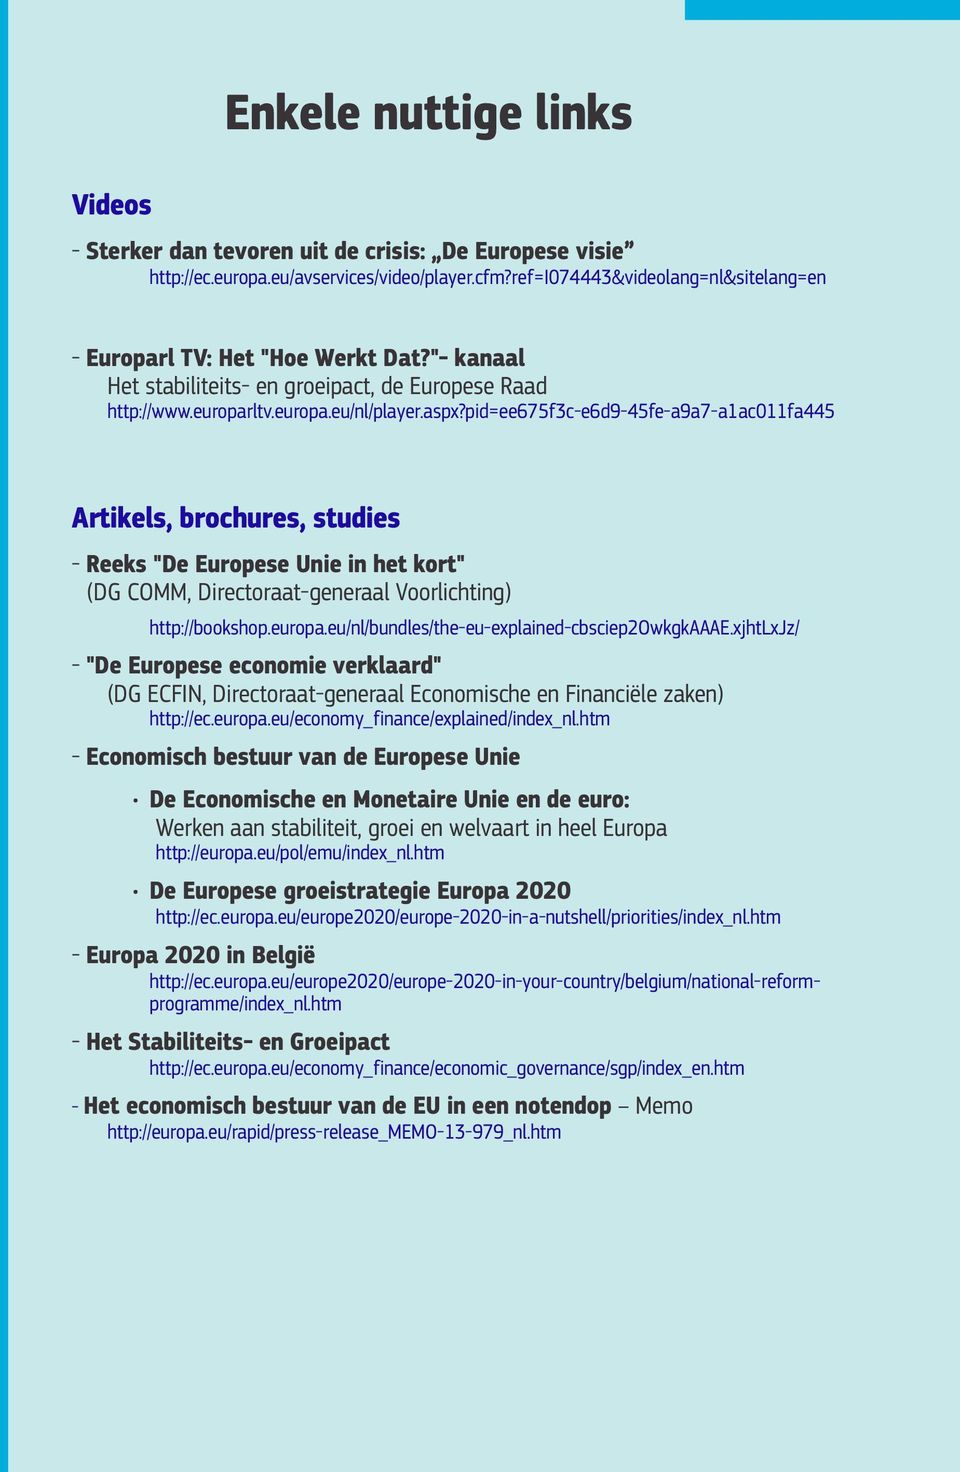 pid=ee675f3c-e6d9-45fe-a9a7-a1ac011fa445 Artikels, brochures, studies - Reeks "De Europese Unie in het kort" (DG COMM, Directoraat-generaal Voorlichting) http://bookshop.europa.